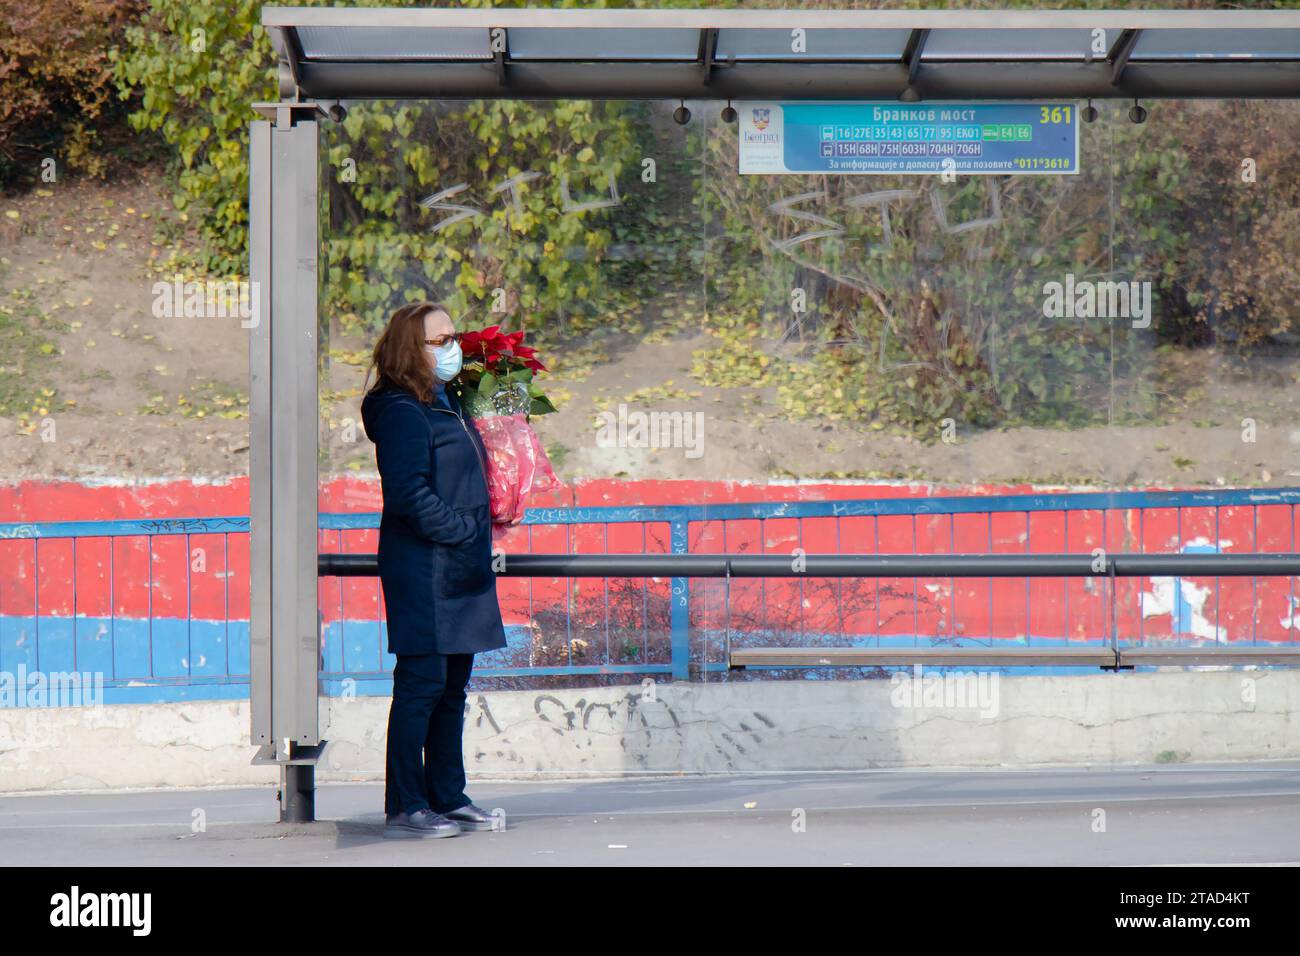 Belgrado, Serbia - 02 de diciembre de 2020: Una mujer con máscara facial esperando el transporte público en la parada de autobús mientras sostiene la planta de Poinsettia, en invierno Foto de stock